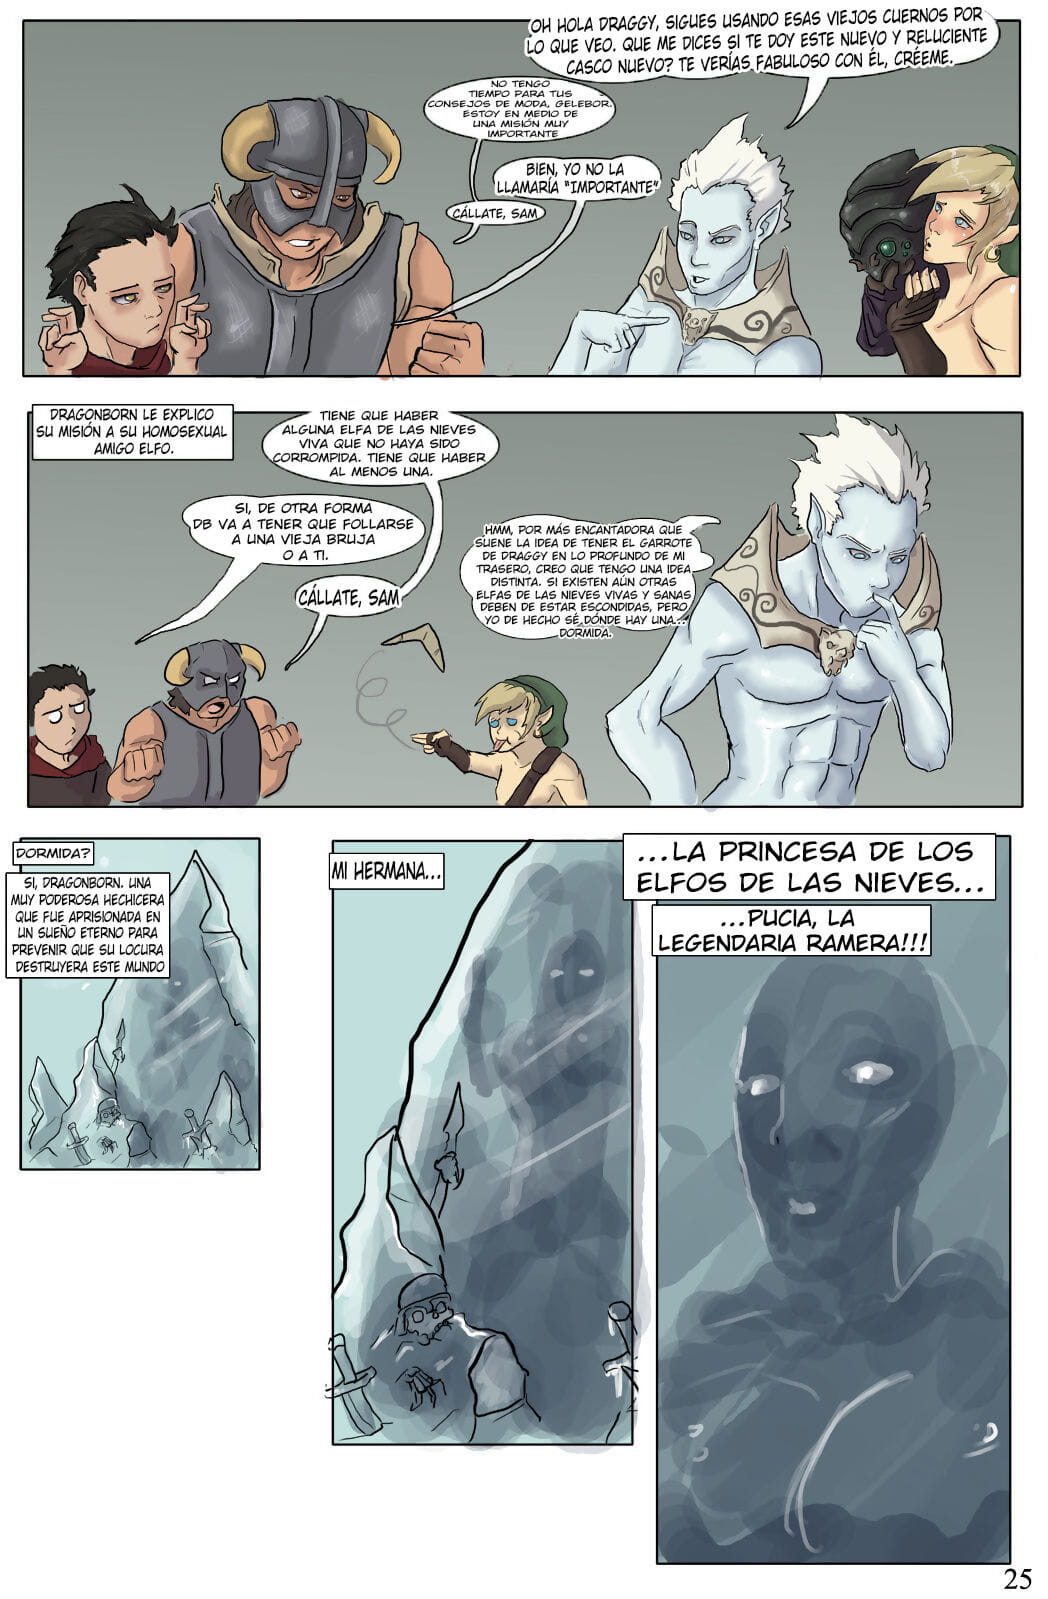 el devenir de dragonborn parte 3 page 1